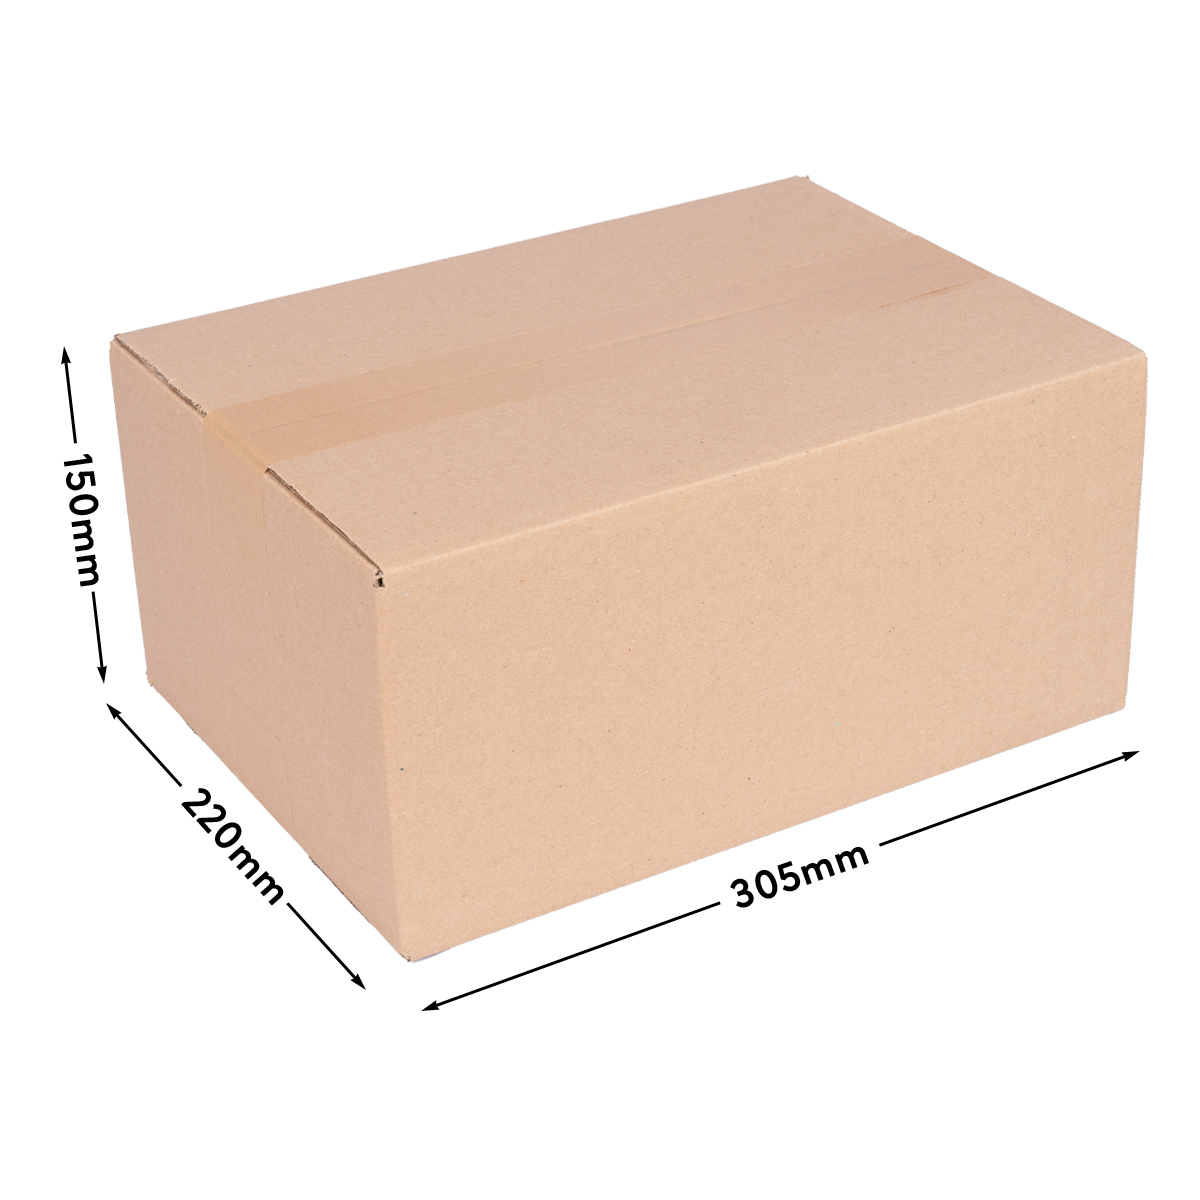 Cardboard box single wall 300x215x140 mm - KK 30